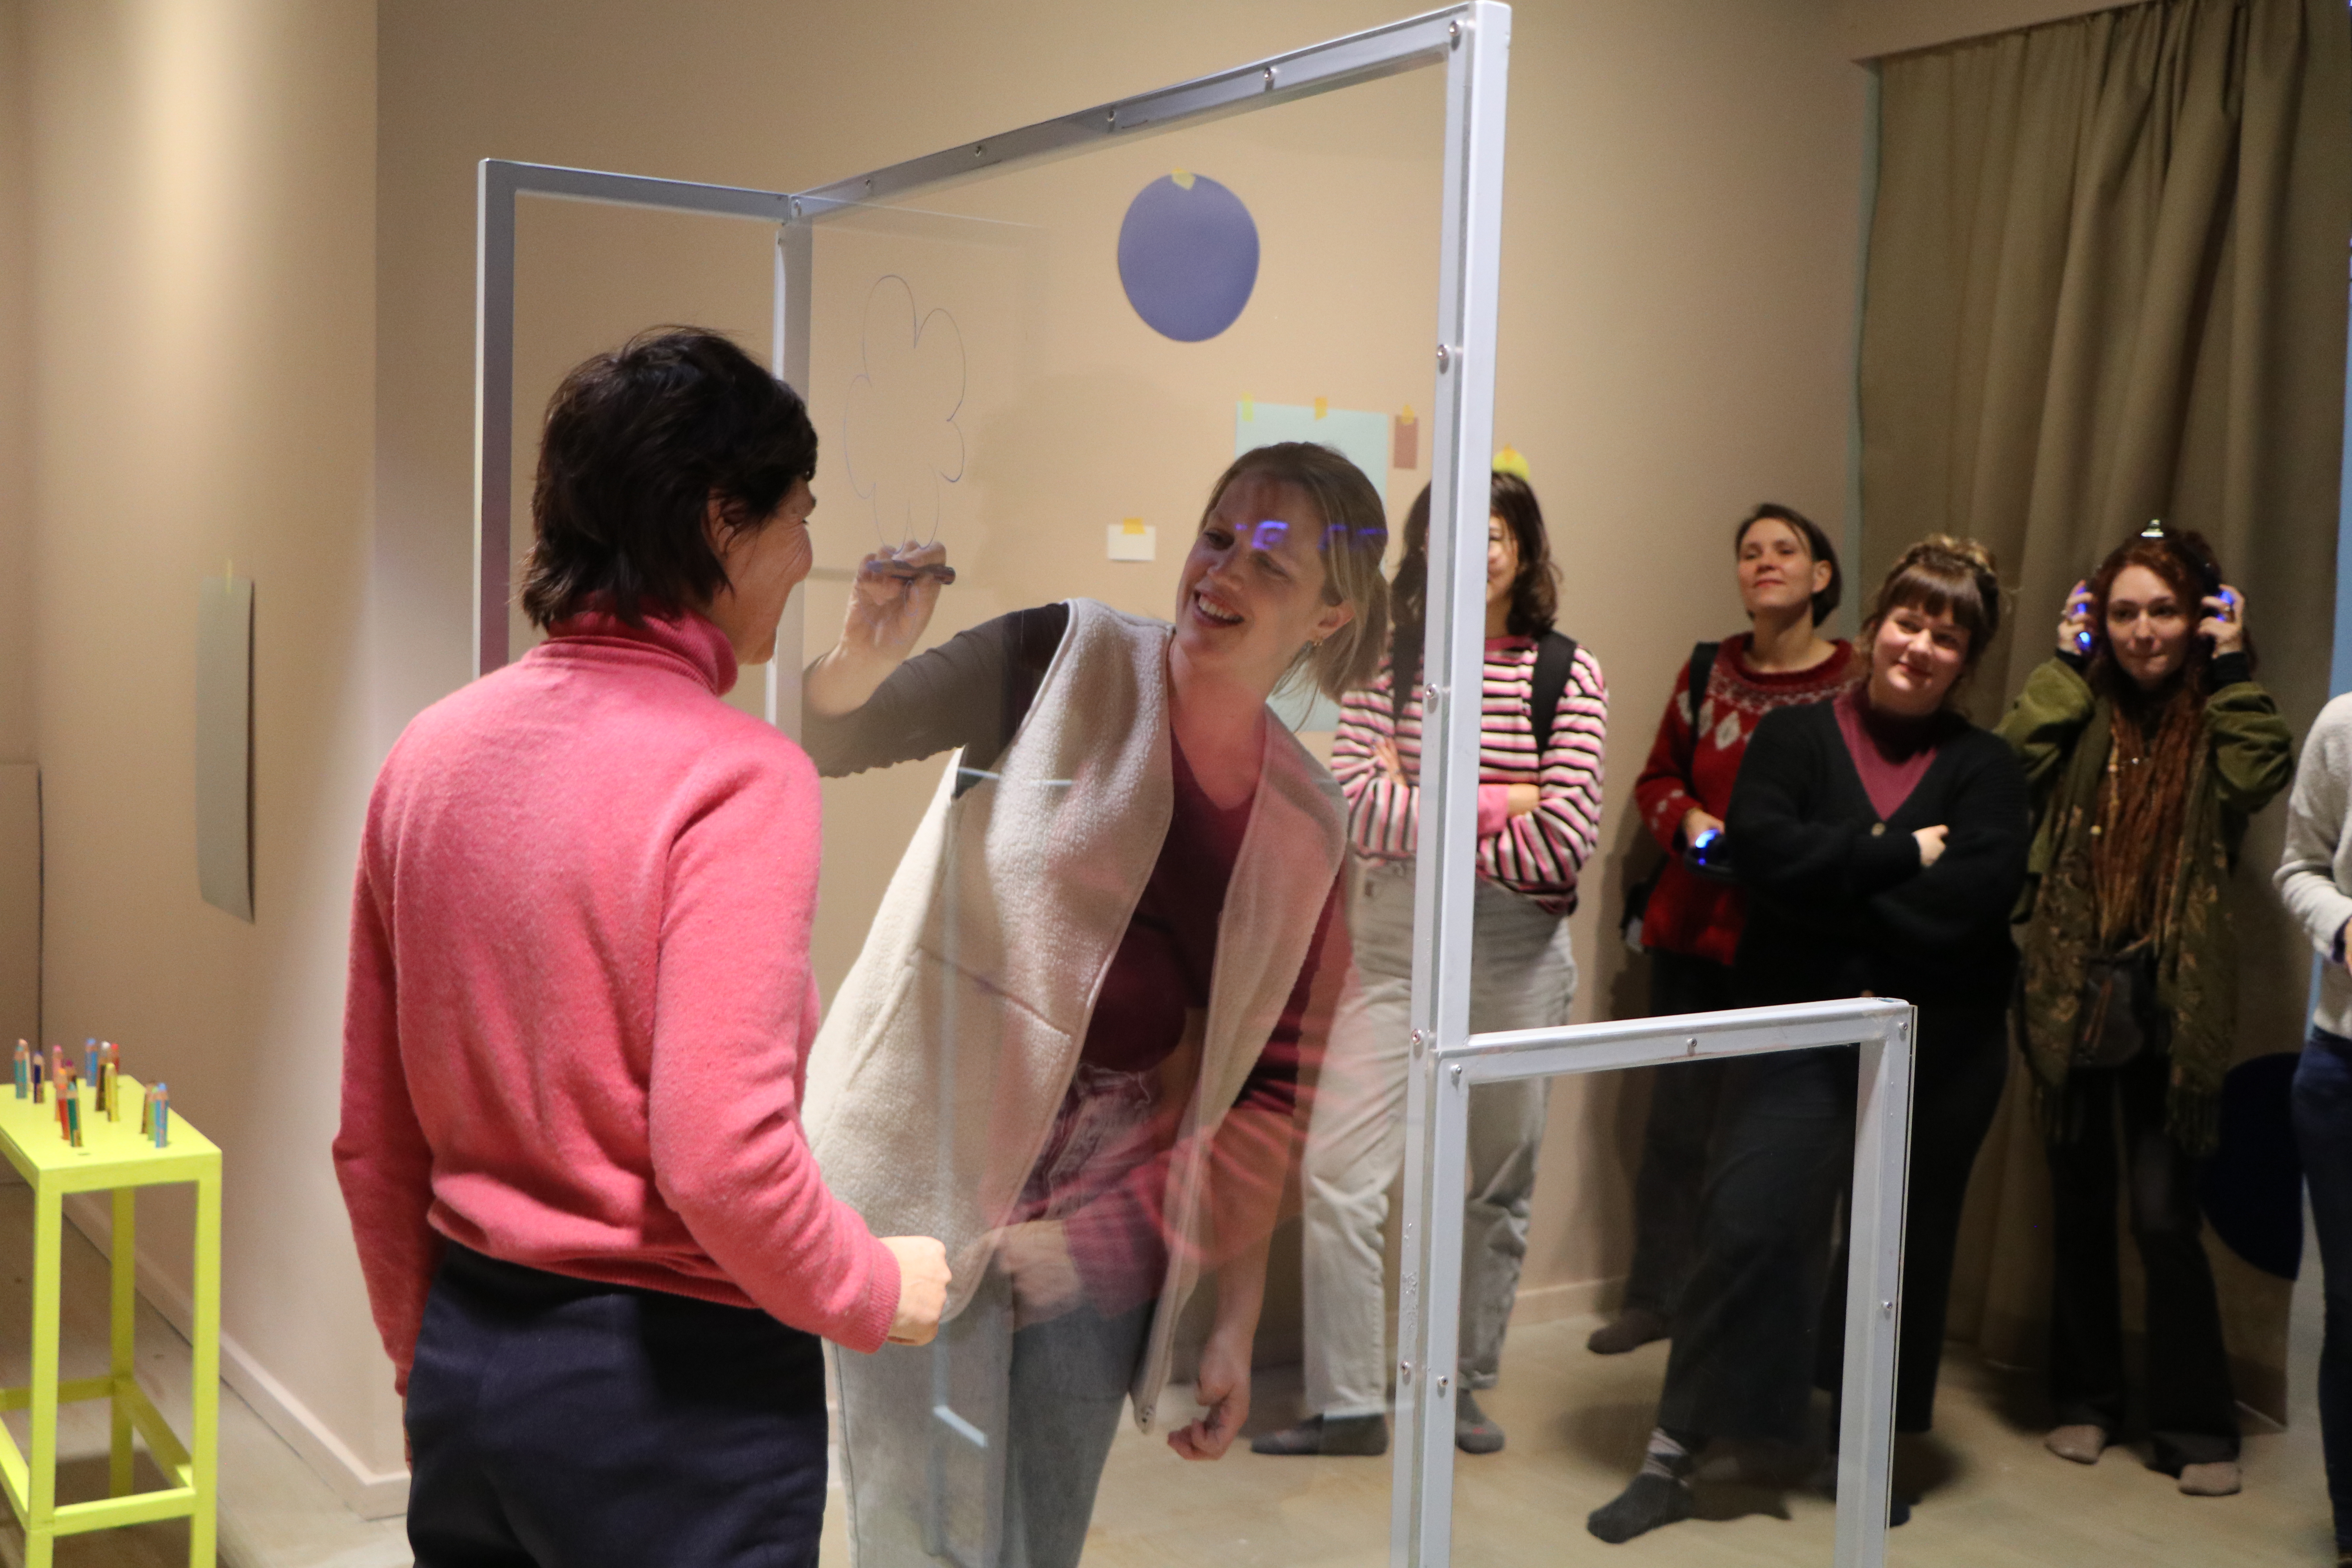 Zwei Personen stehen sich durch eine Plexiglasscheibe getrennt gegenüber, eine der beiden zeichnet etwas mit einem Stift auf die Scheibe. Im Hintergrund stehen Zuschauer:innen